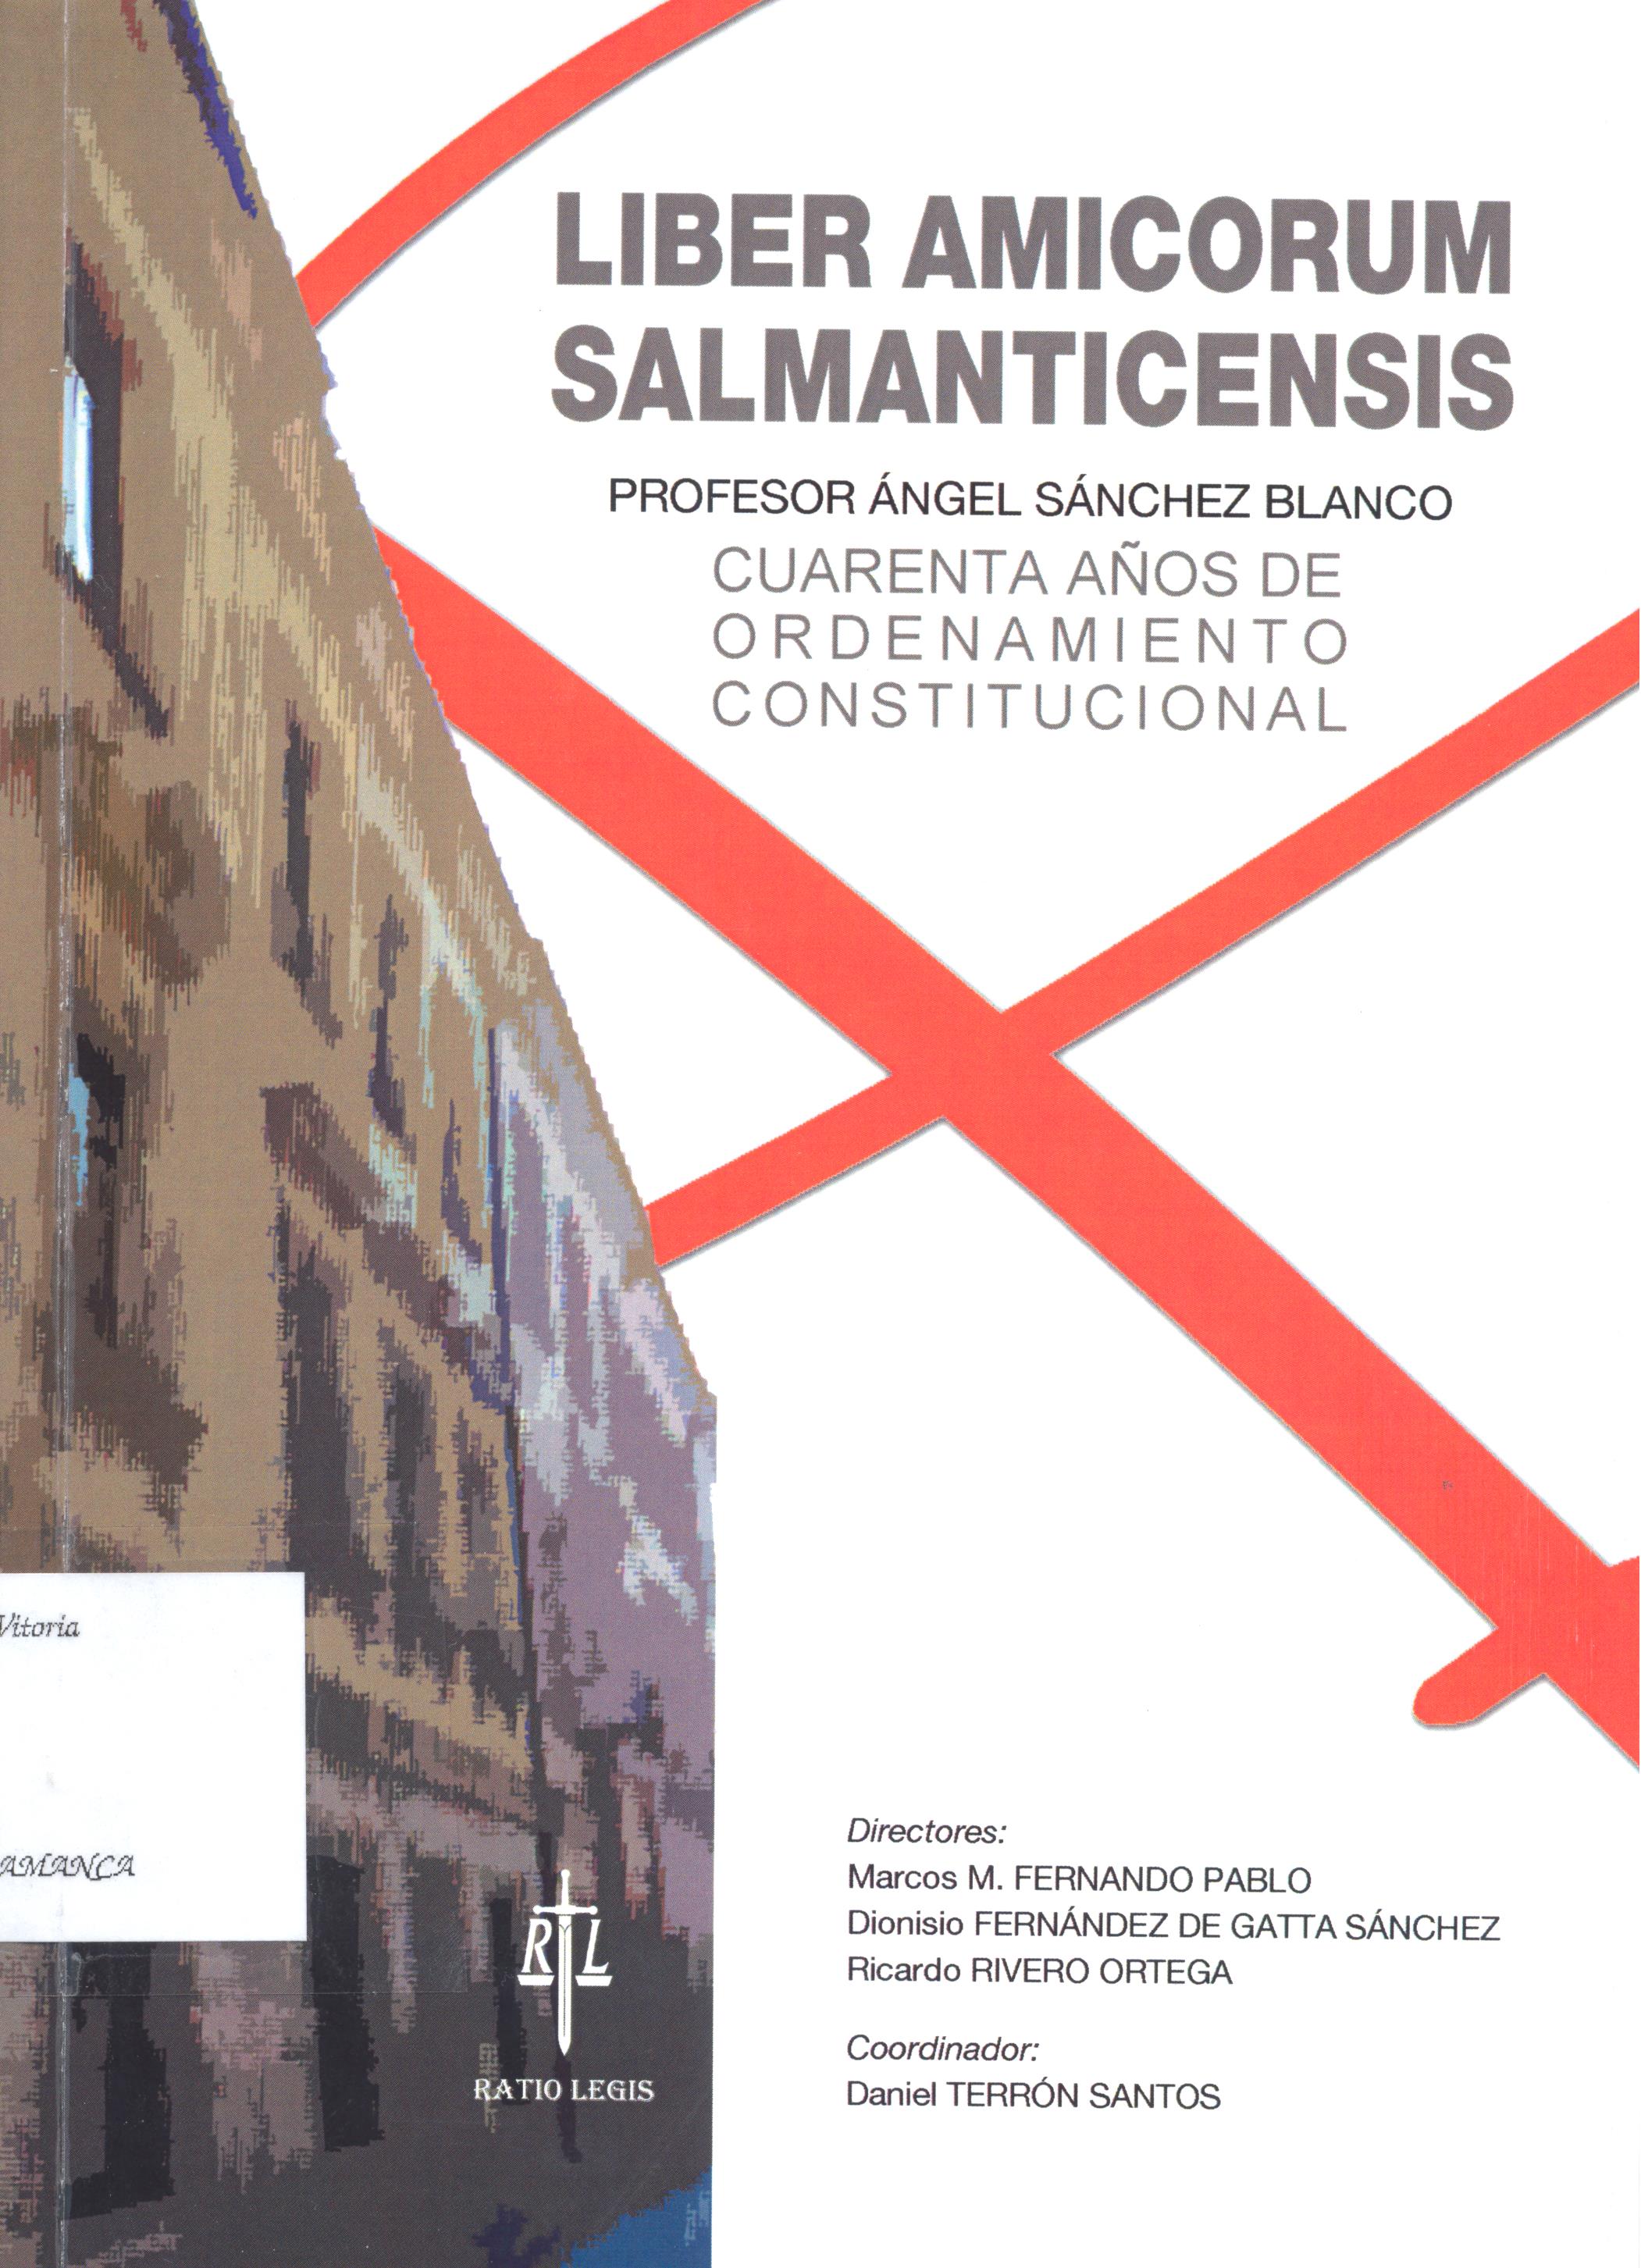 Imagen de portada del libro Liber amicorum salmanticensis profesor Ángel Sánchez Blanco